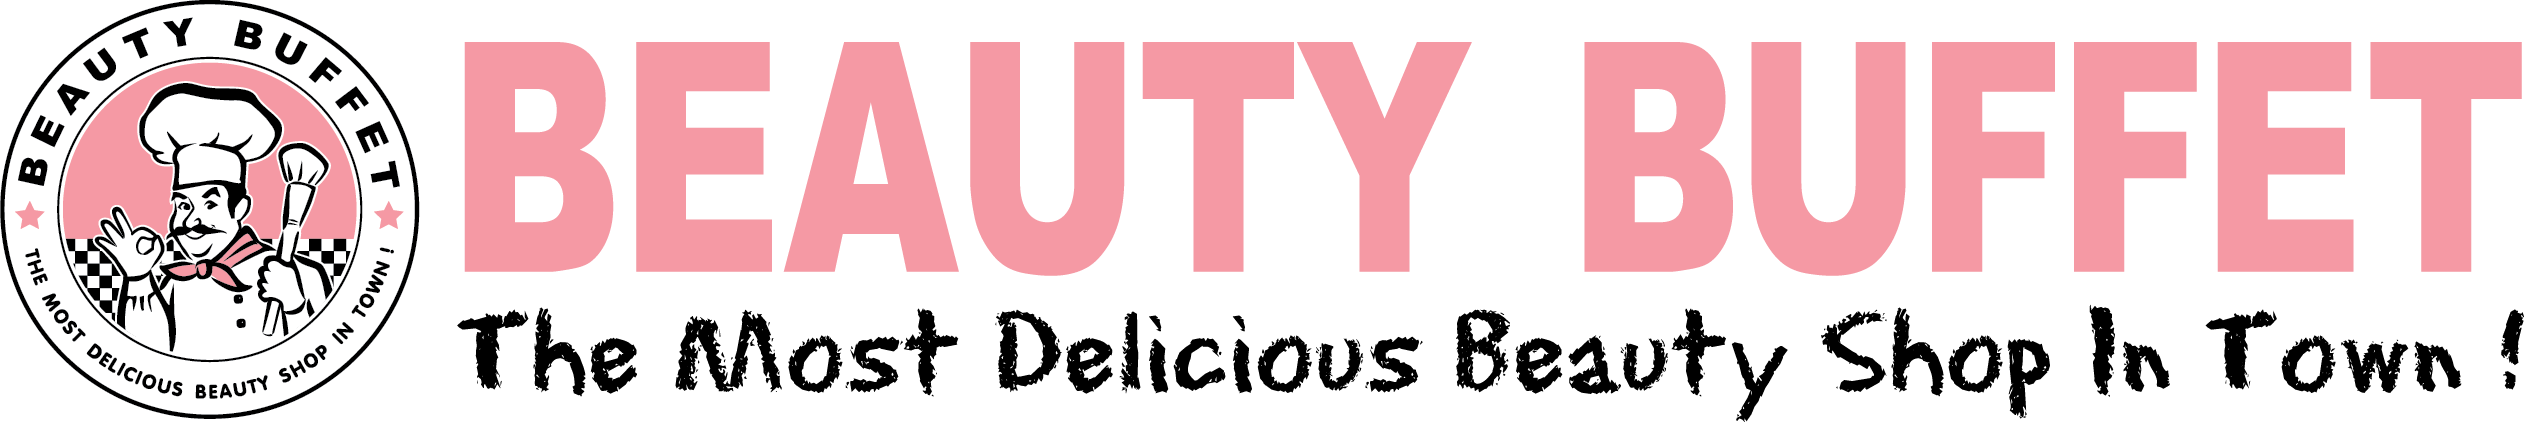 standard logo beautybuffet [Converted] (2)(1).png